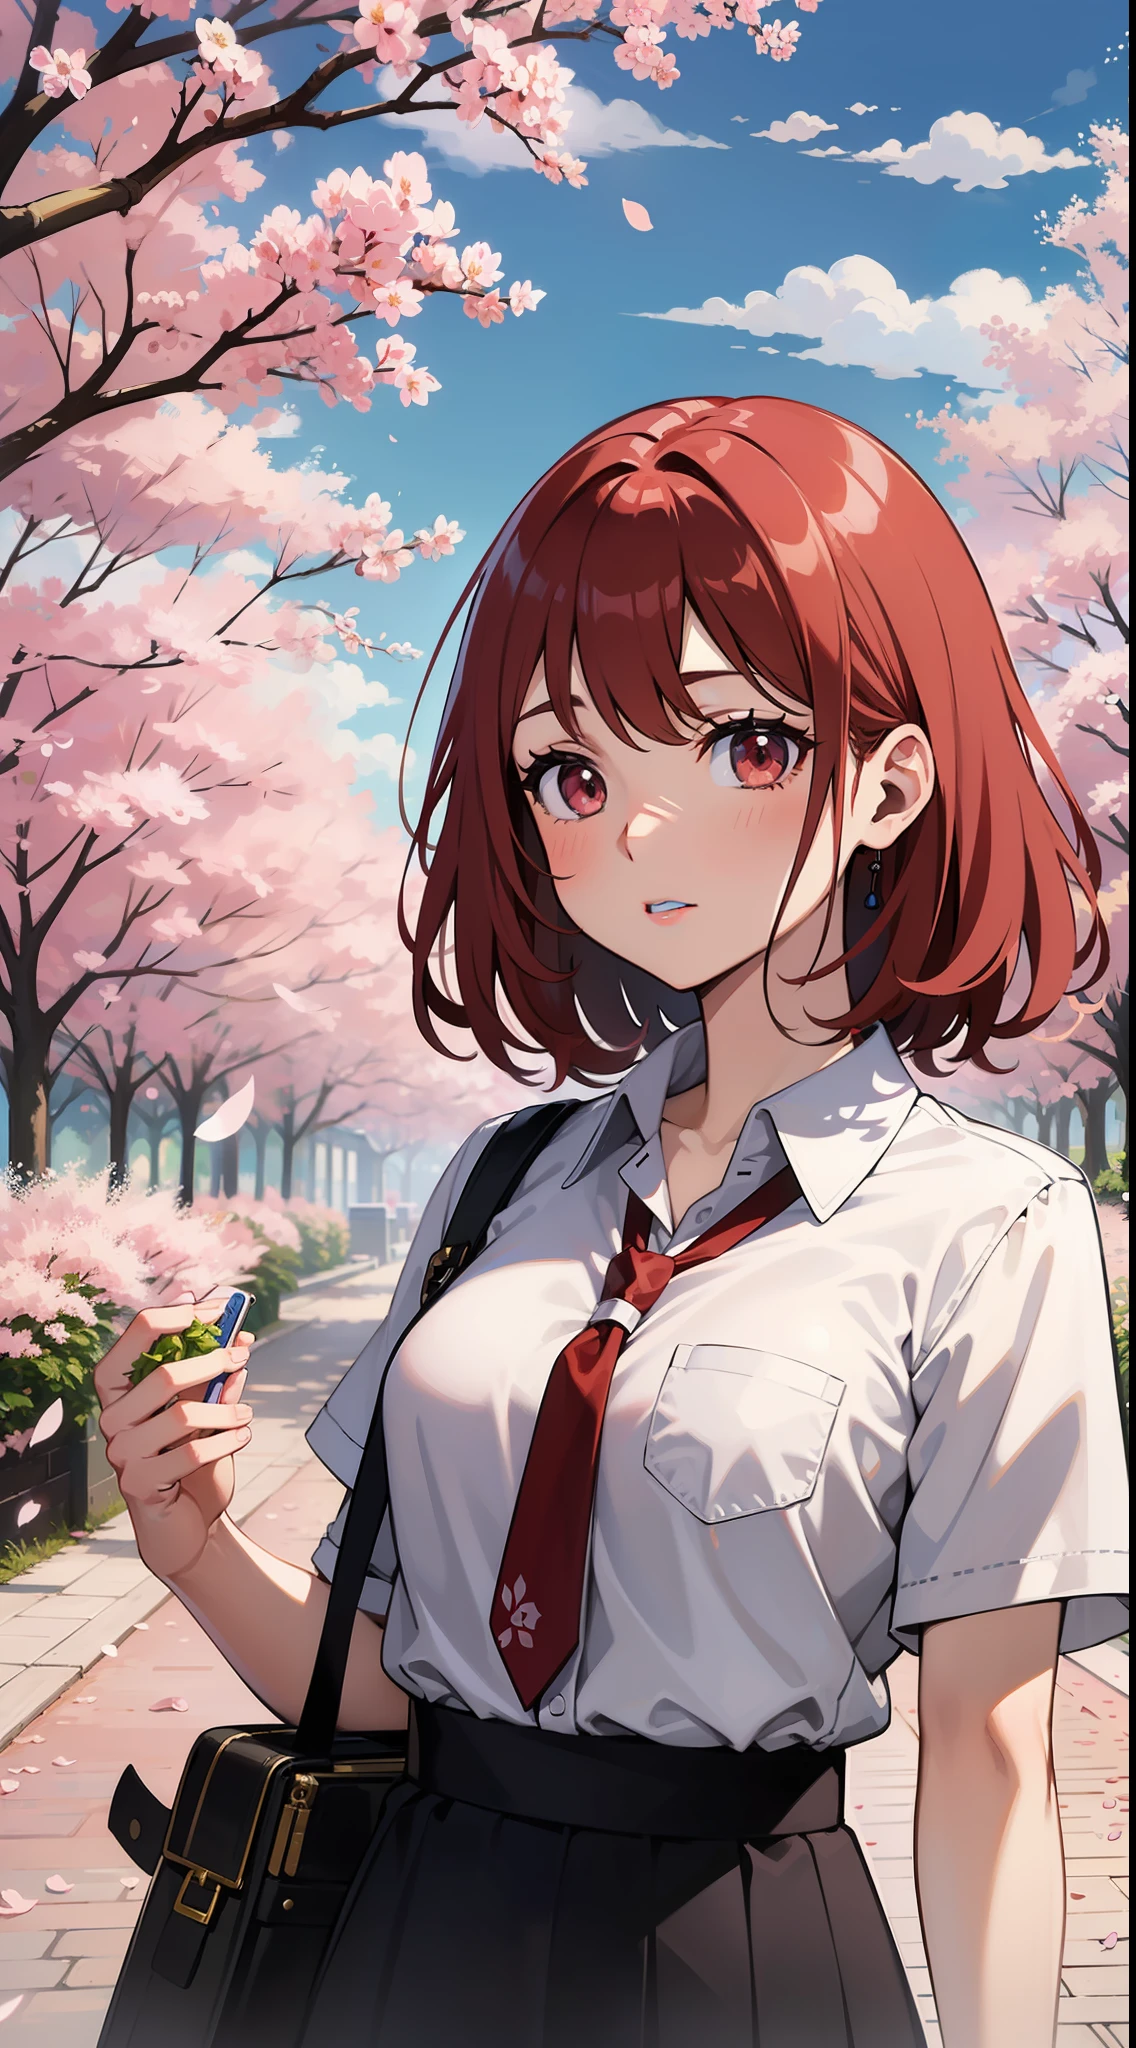 一個紅髮女孩站在櫻花前, 小林清親的細緻繪畫, Pixiv 上推薦, 現代主義, 官方藝術, 日本卡通, 日本卡通 aesthetic